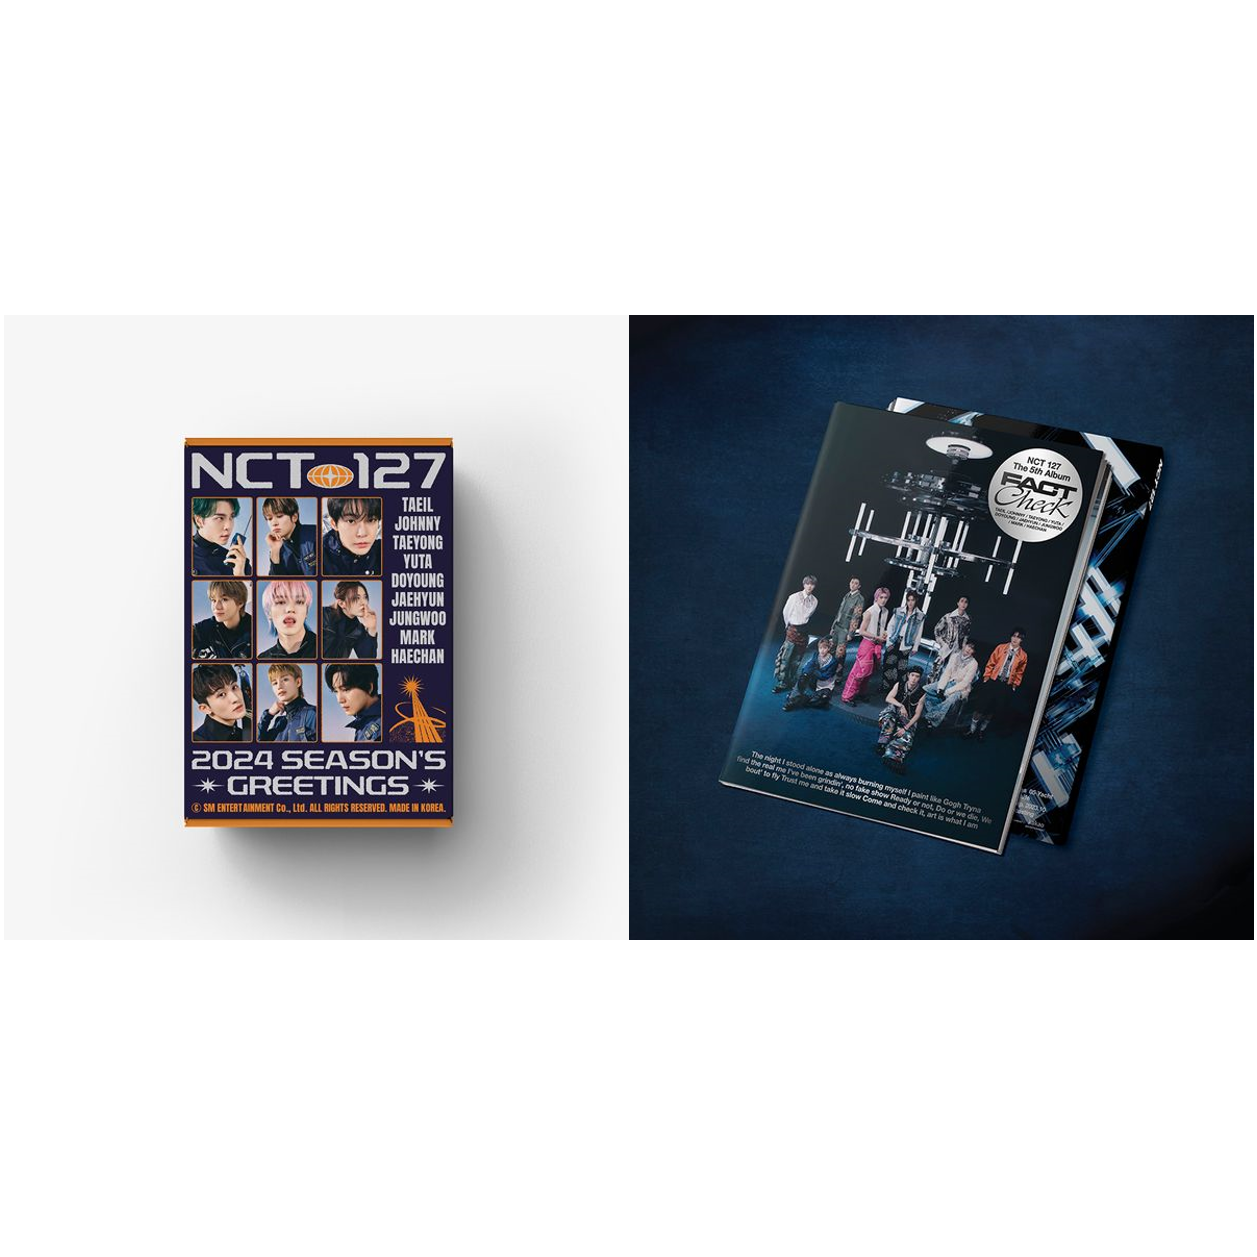 [全款][台历+专辑] [套装] [Ktown4u Special Gift] [NCT 127] 2024 SEASON'S GREETINGS+NCT 127 - The 5th Album [Fact Check] (Chandelier Ver.) _ NCT_127事务所